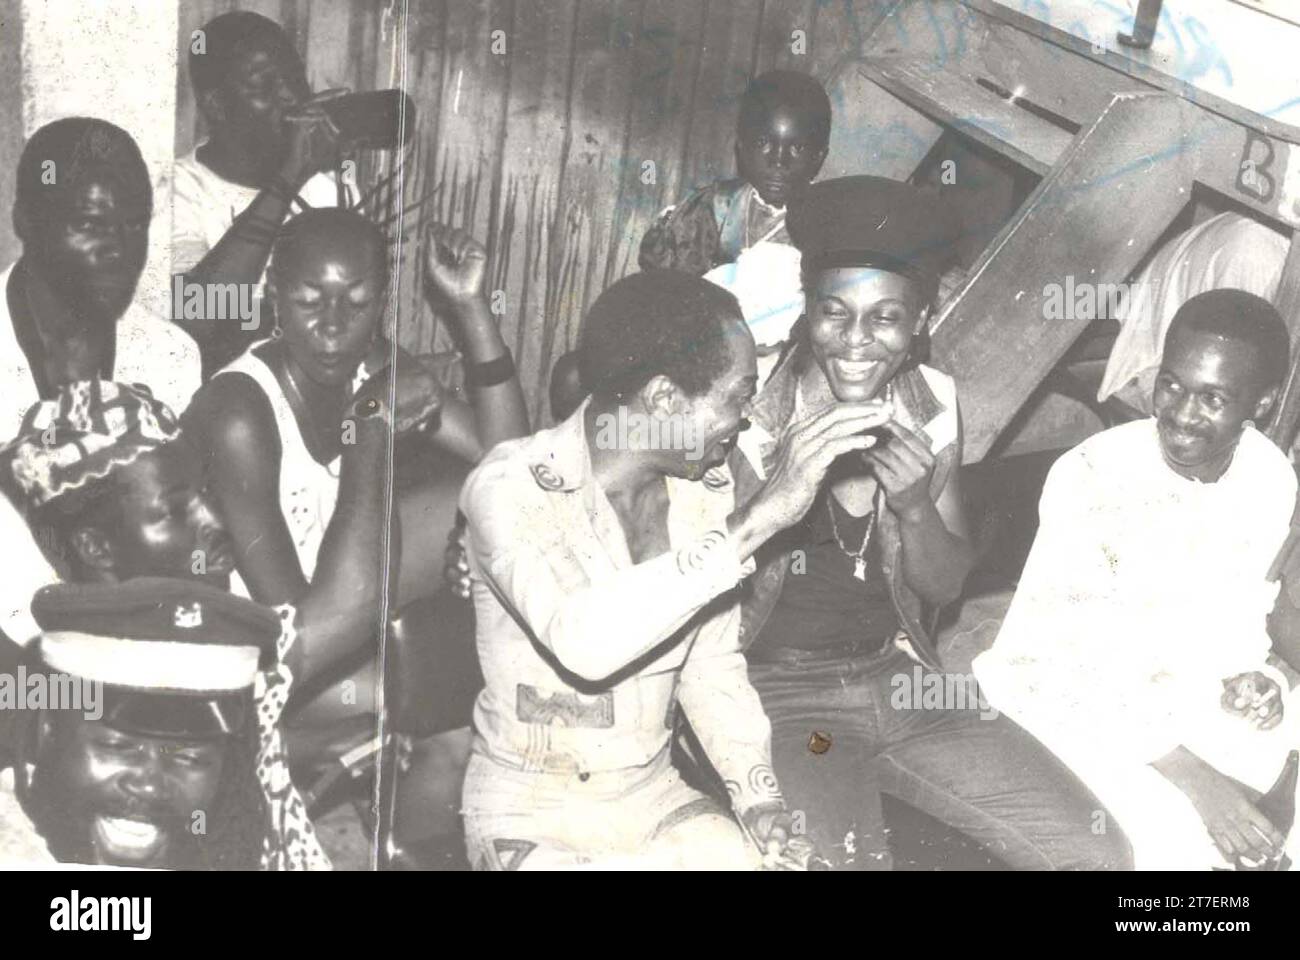 Fela Aníkúlápó Kútì, nota anche come Abàmì Ẹ̀dá, è stata una musicista nigeriana, bandleader, compositore, attivista politica e panafricanista. È considerato il re dell'afrobeat, un genere musicale nigeriano che combina la musica dell'Africa occidentale con il funk e il jazz americano. Al culmine della sua popolarità, è stato definito come uno dei più "stimolanti e carismatici artisti musicali africani". Foto Stock